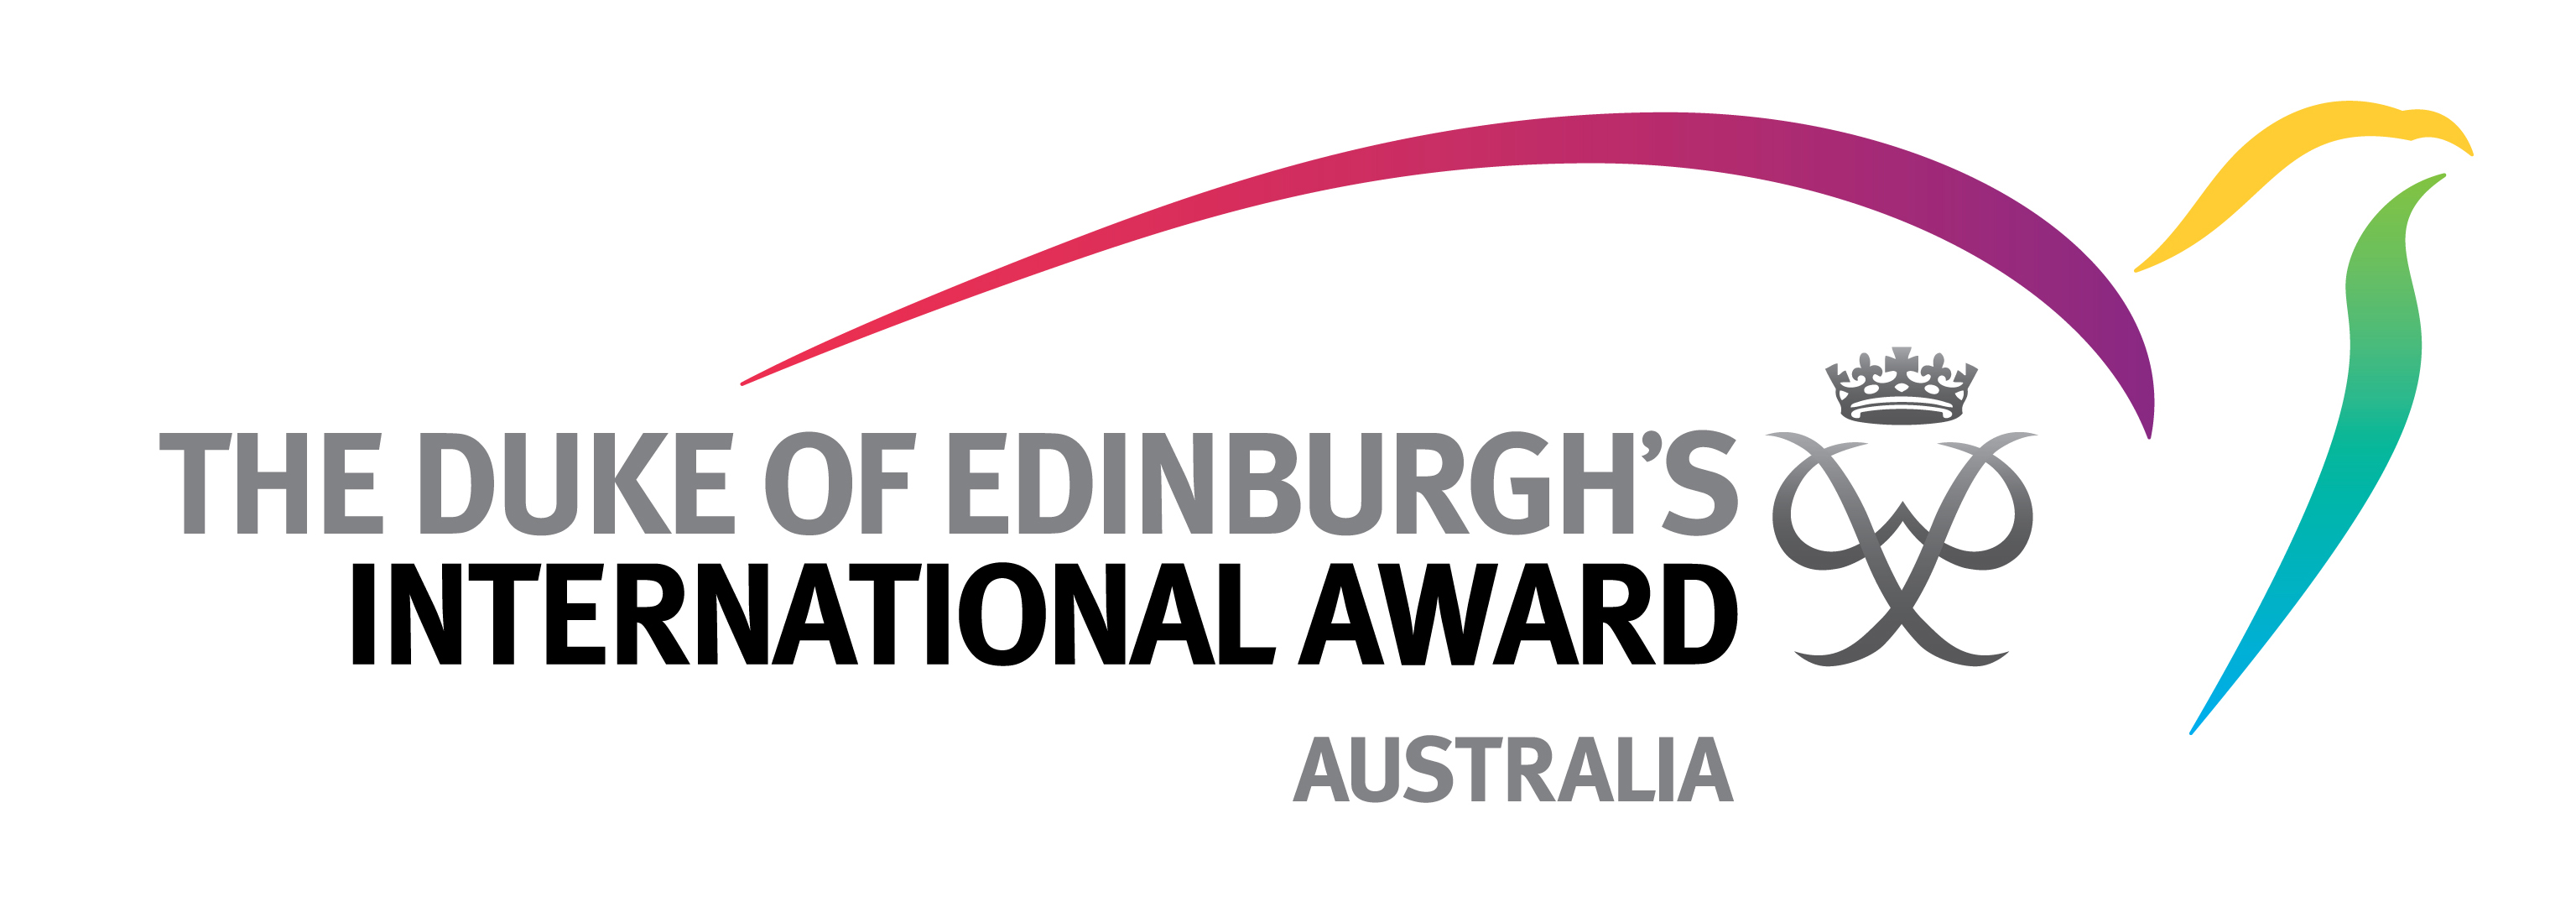 The Duke of Edinburgh's International Award - Australia